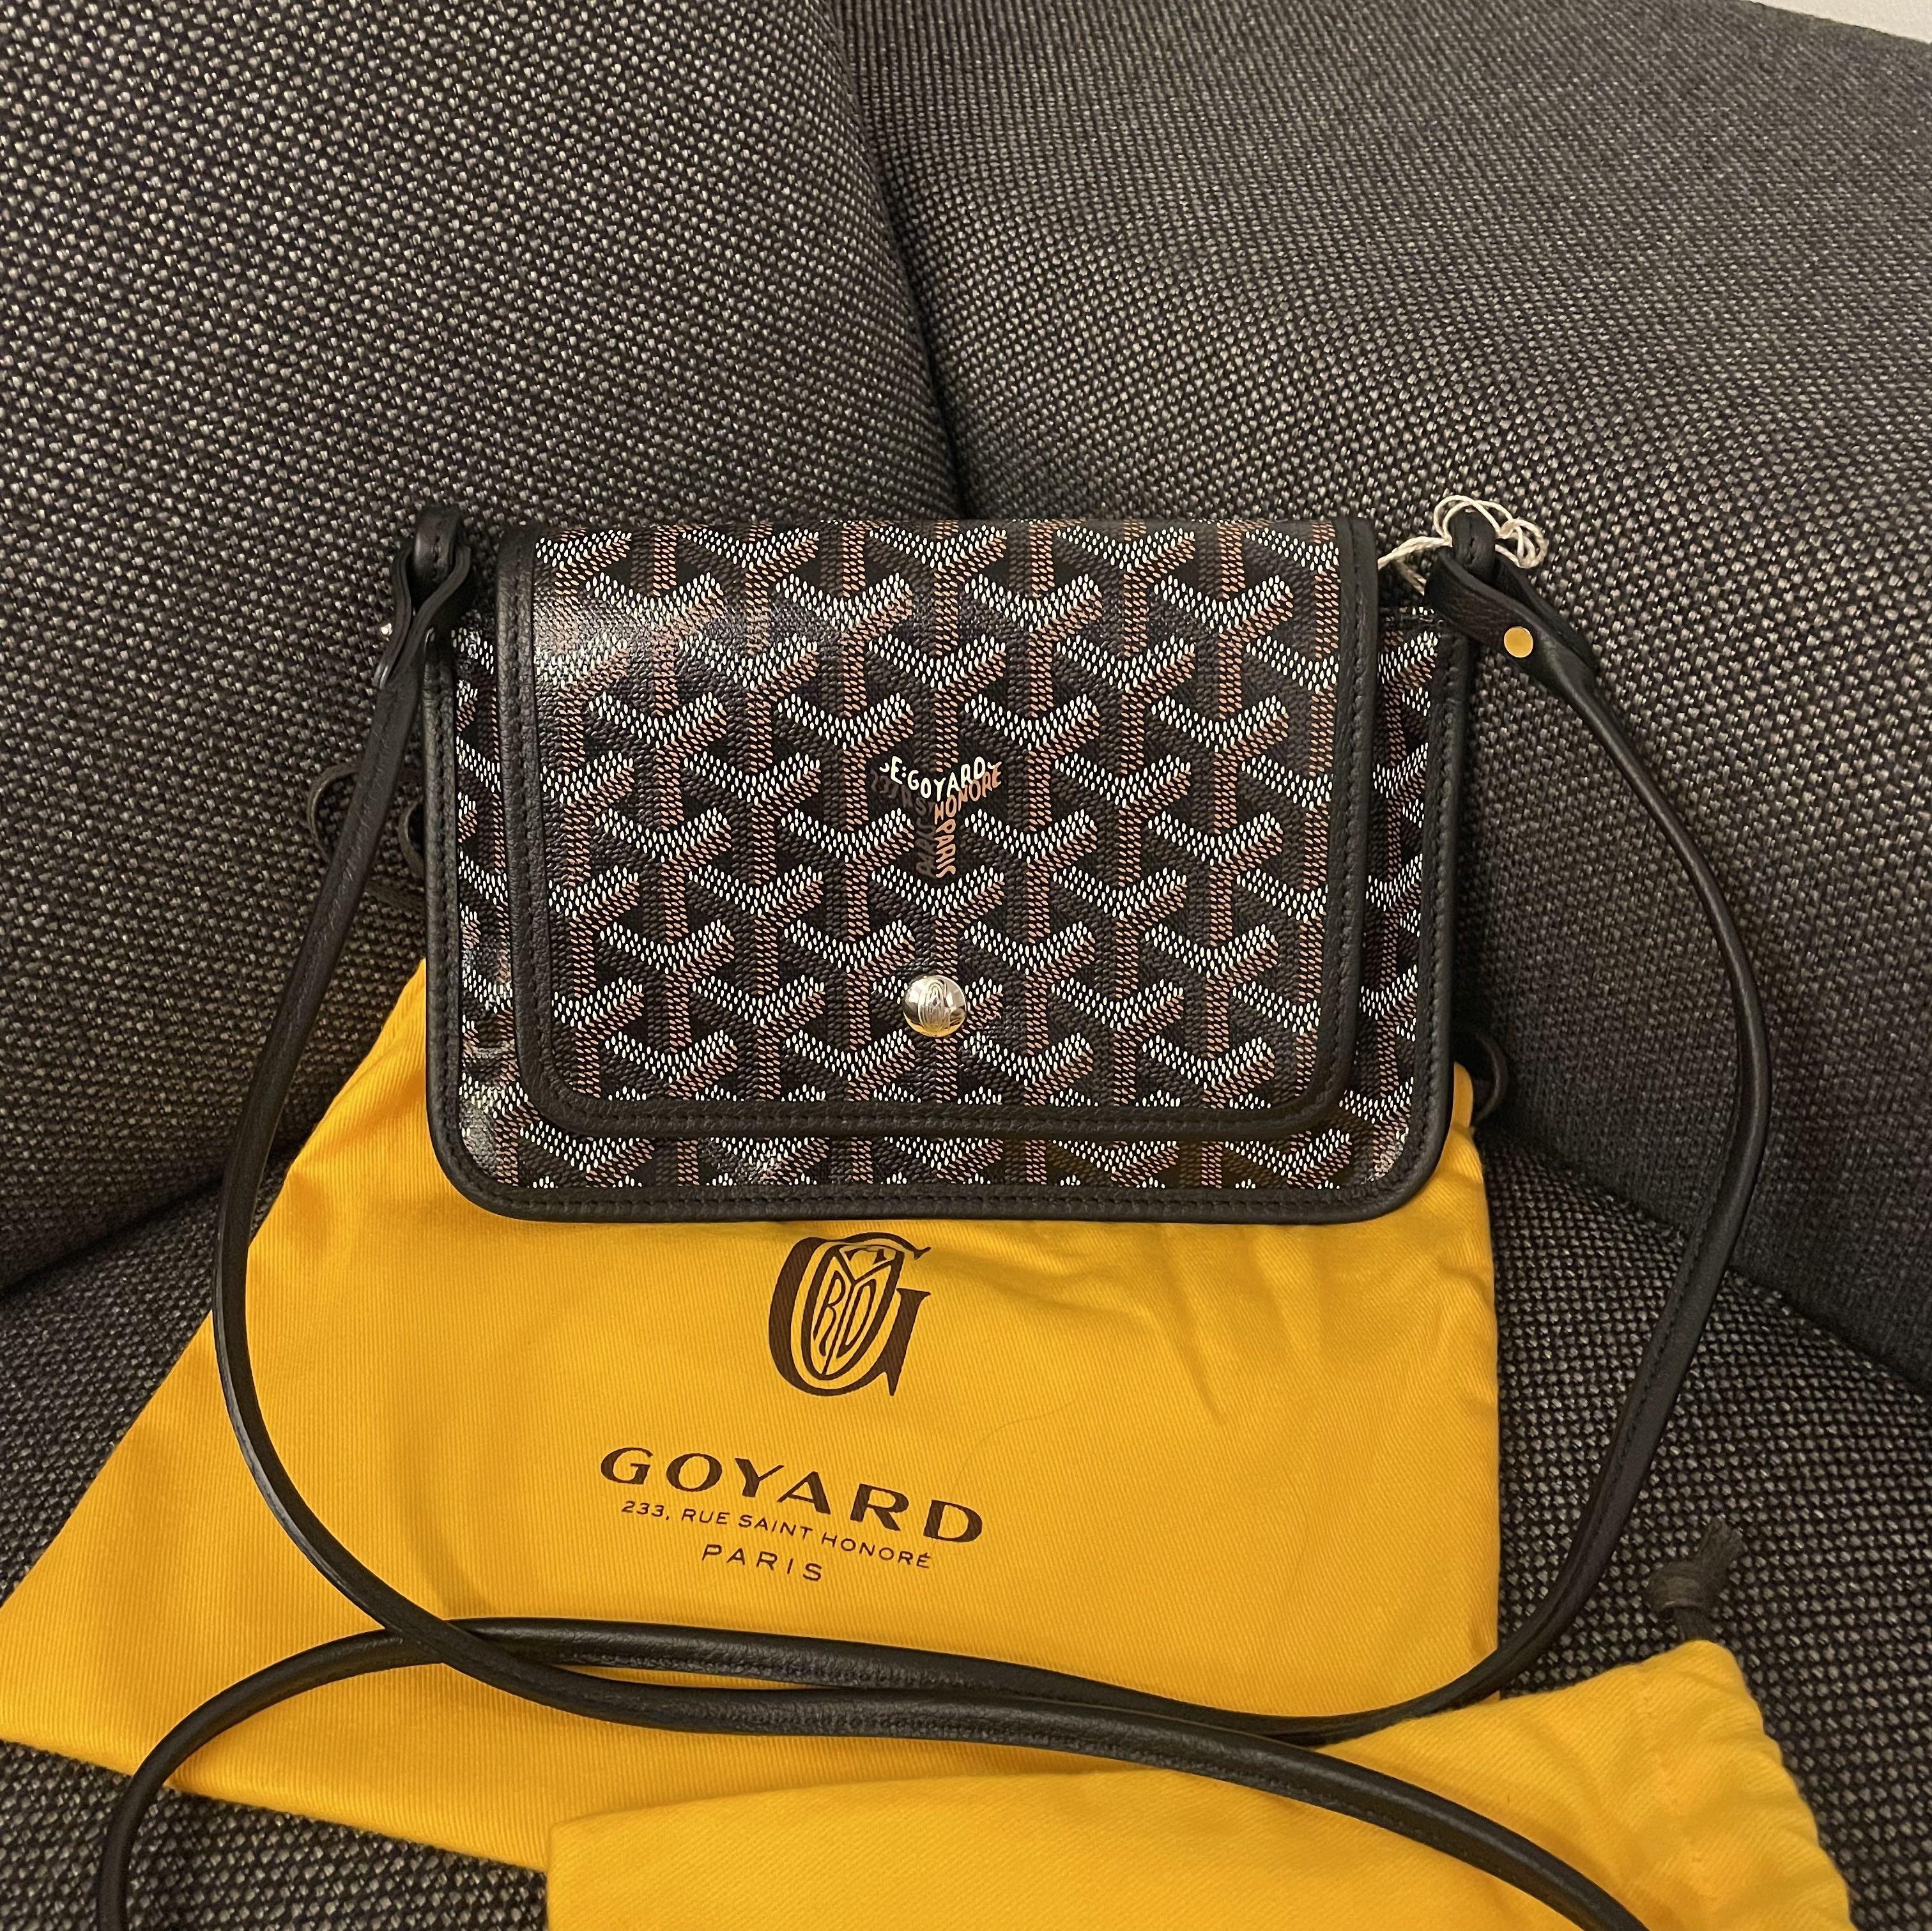 Goyard men's clutch, Luxury, Bags & Wallets on Carousell